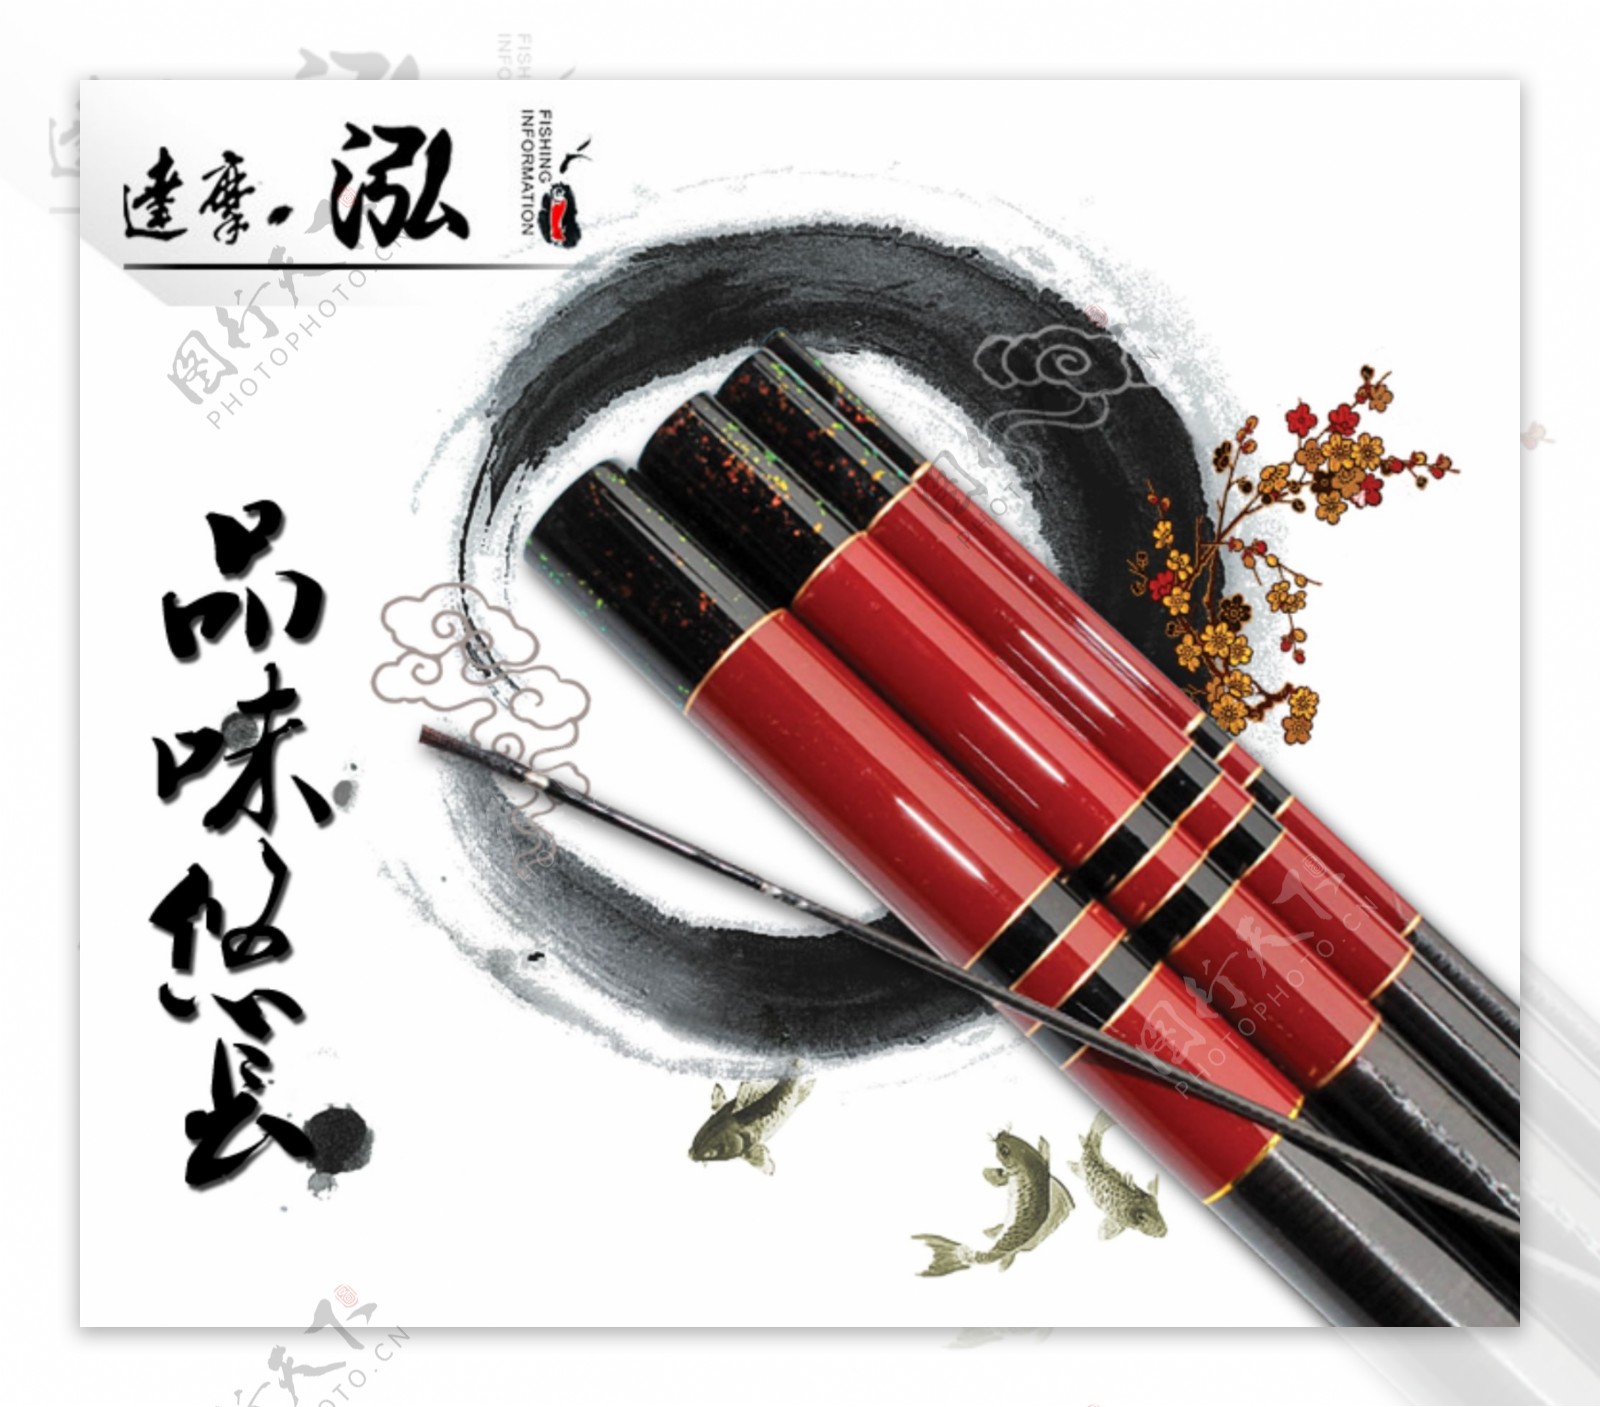 水墨画中国风渔具图片